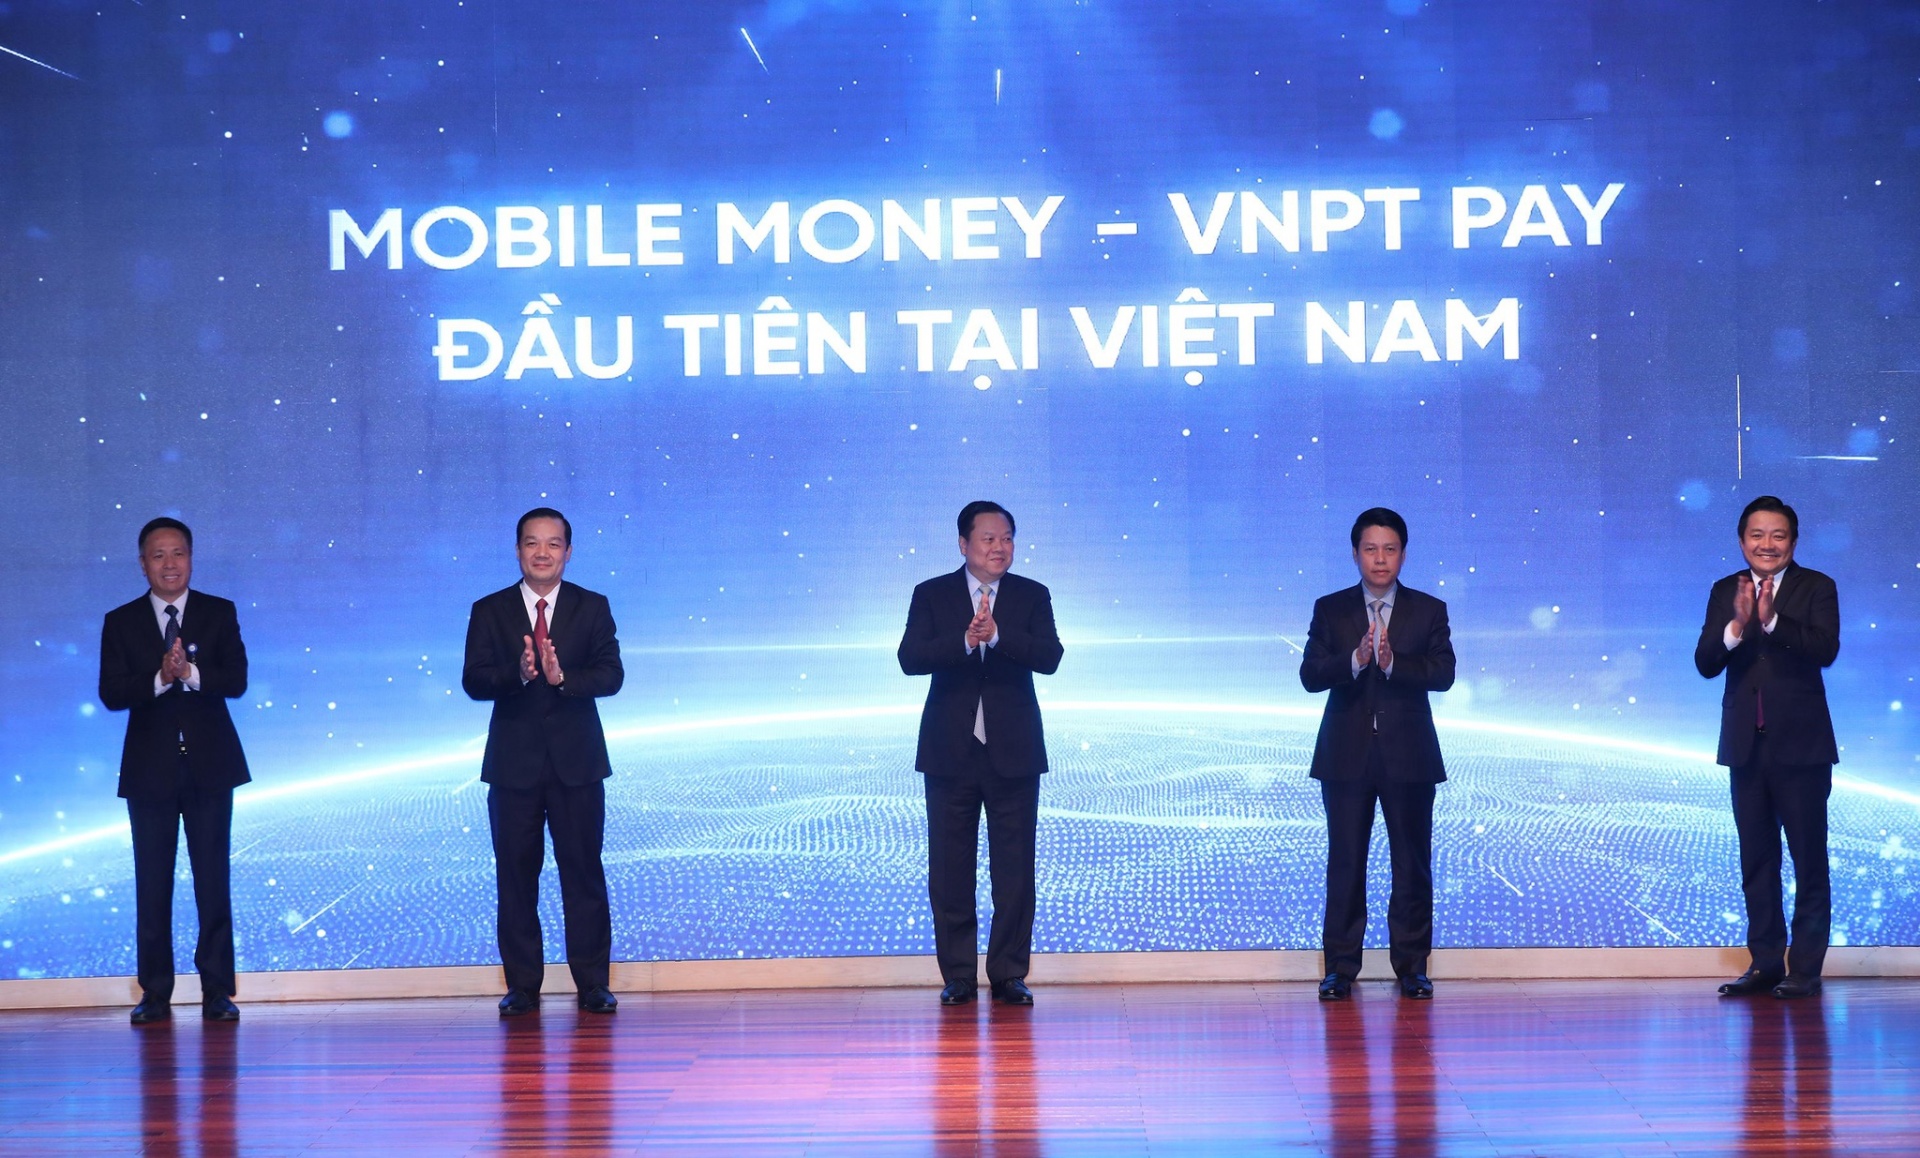 VNPT to launch mobile money through VinaPhone subscriptions